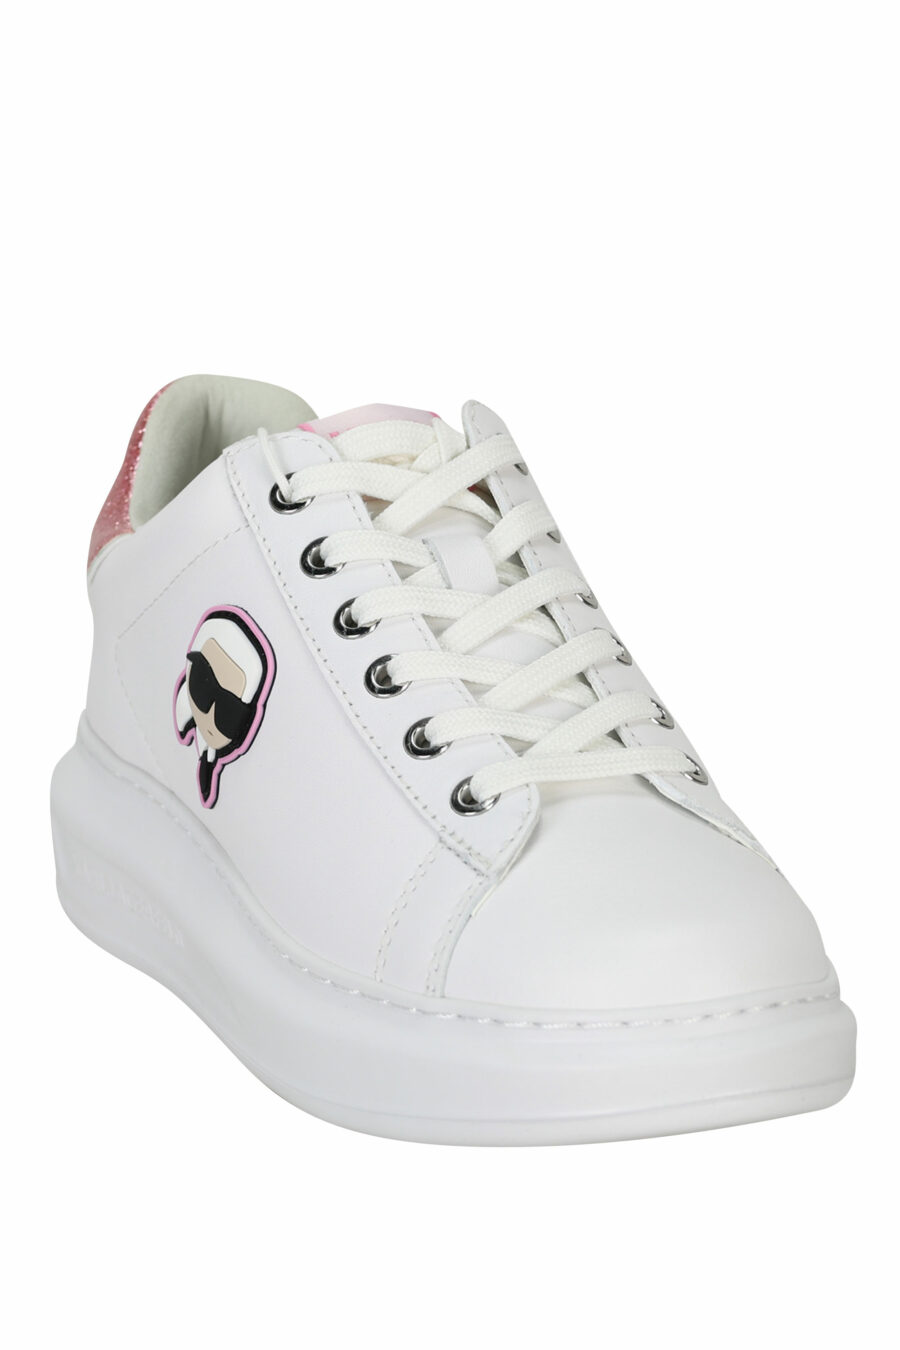 Zapatillas blancas "Kapri" con logo en goma y detalle rosa - 5059529351099 1